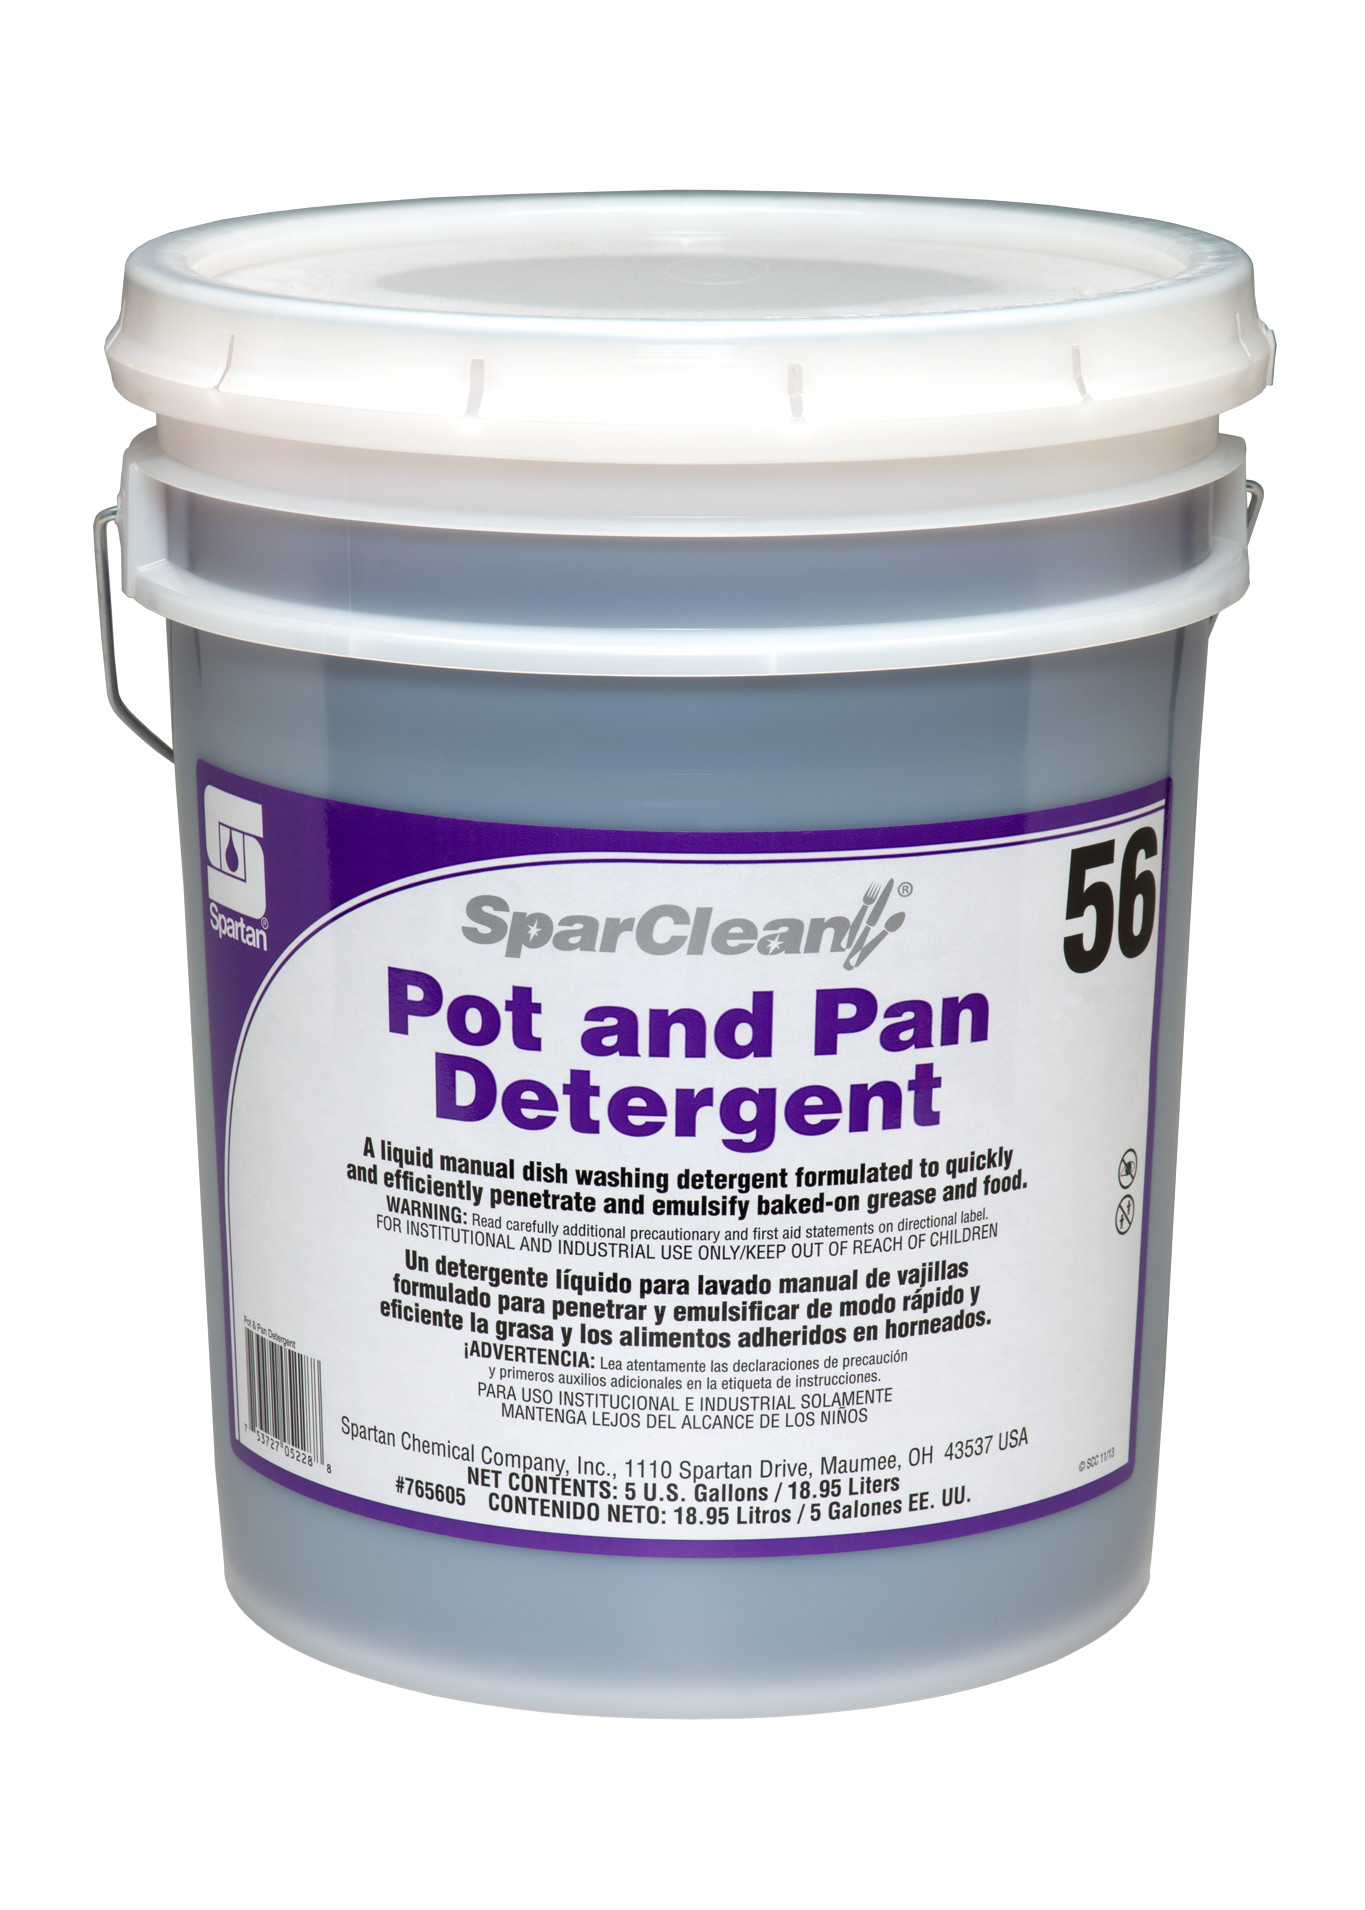 Pot+and+Pan+Detergent+56+%7B5+gallon+pail%7D+SparClean